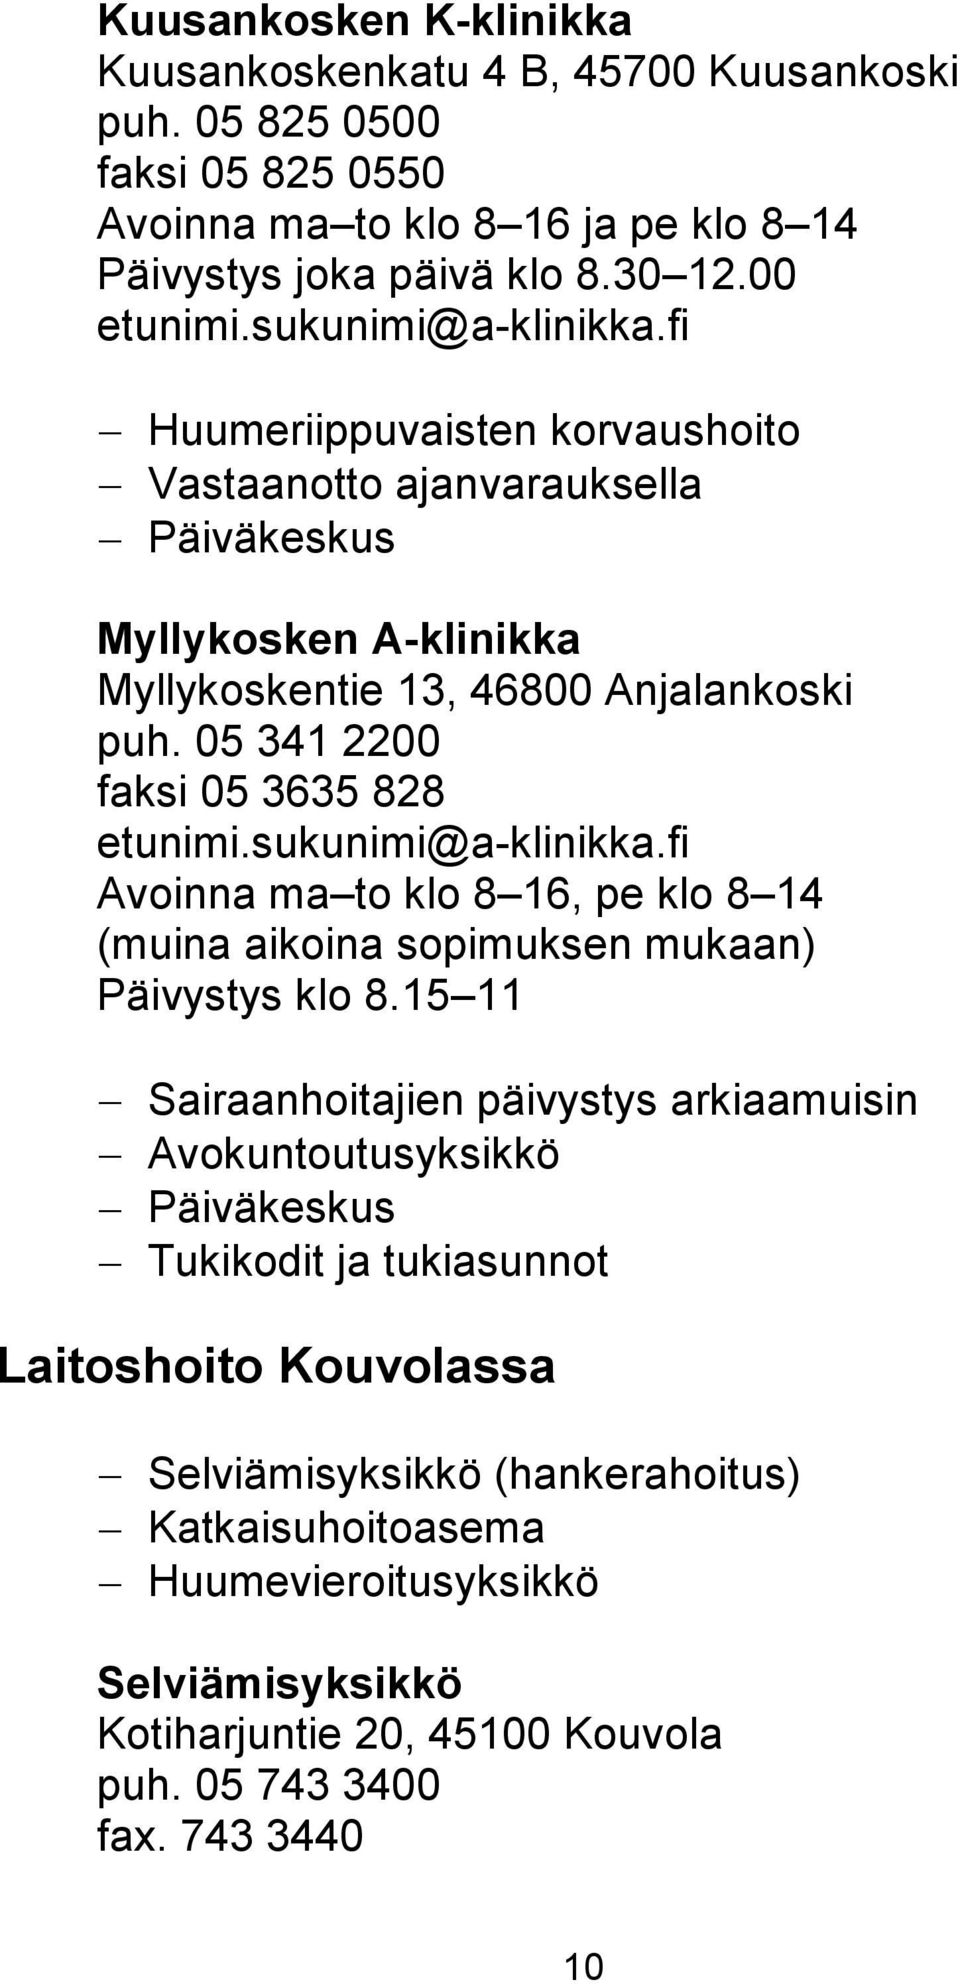 05 341 2200 faksi 05 3635 828 etunimi.sukunimi@a-klinikka.fi Avoinna ma to klo 8 16, pe klo 8 14 (muina aikoina sopimuksen mukaan) Päivystys klo 8.